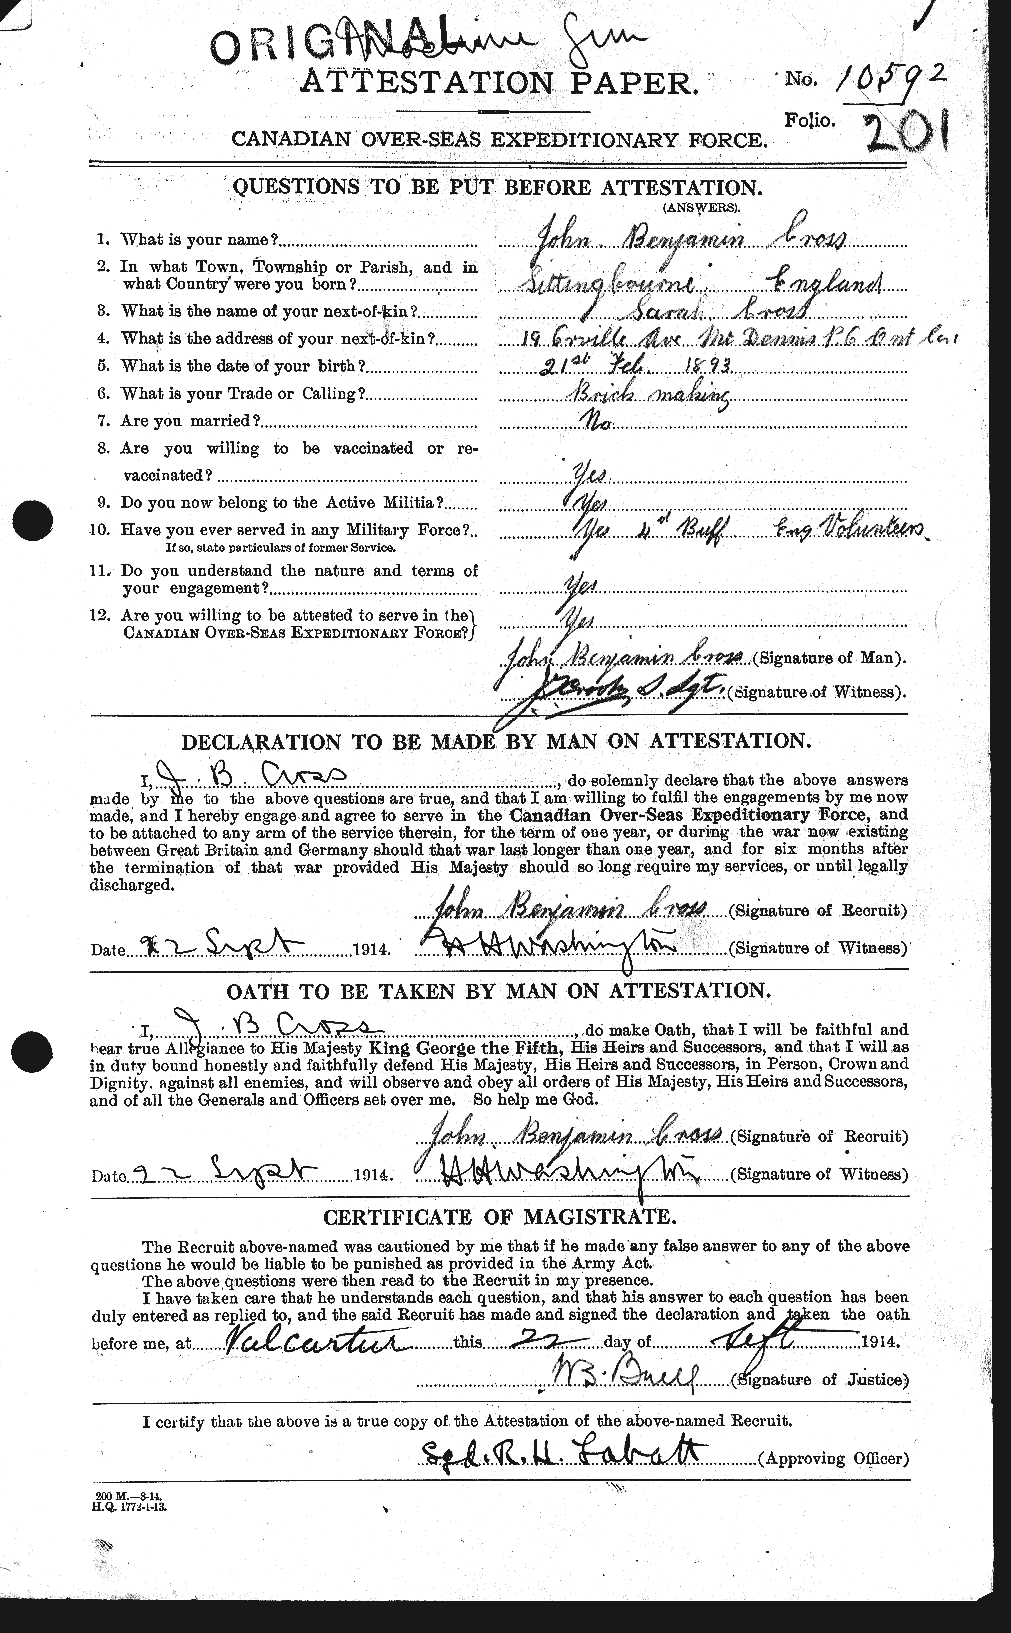 Dossiers du Personnel de la Première Guerre mondiale - CEC 064474a